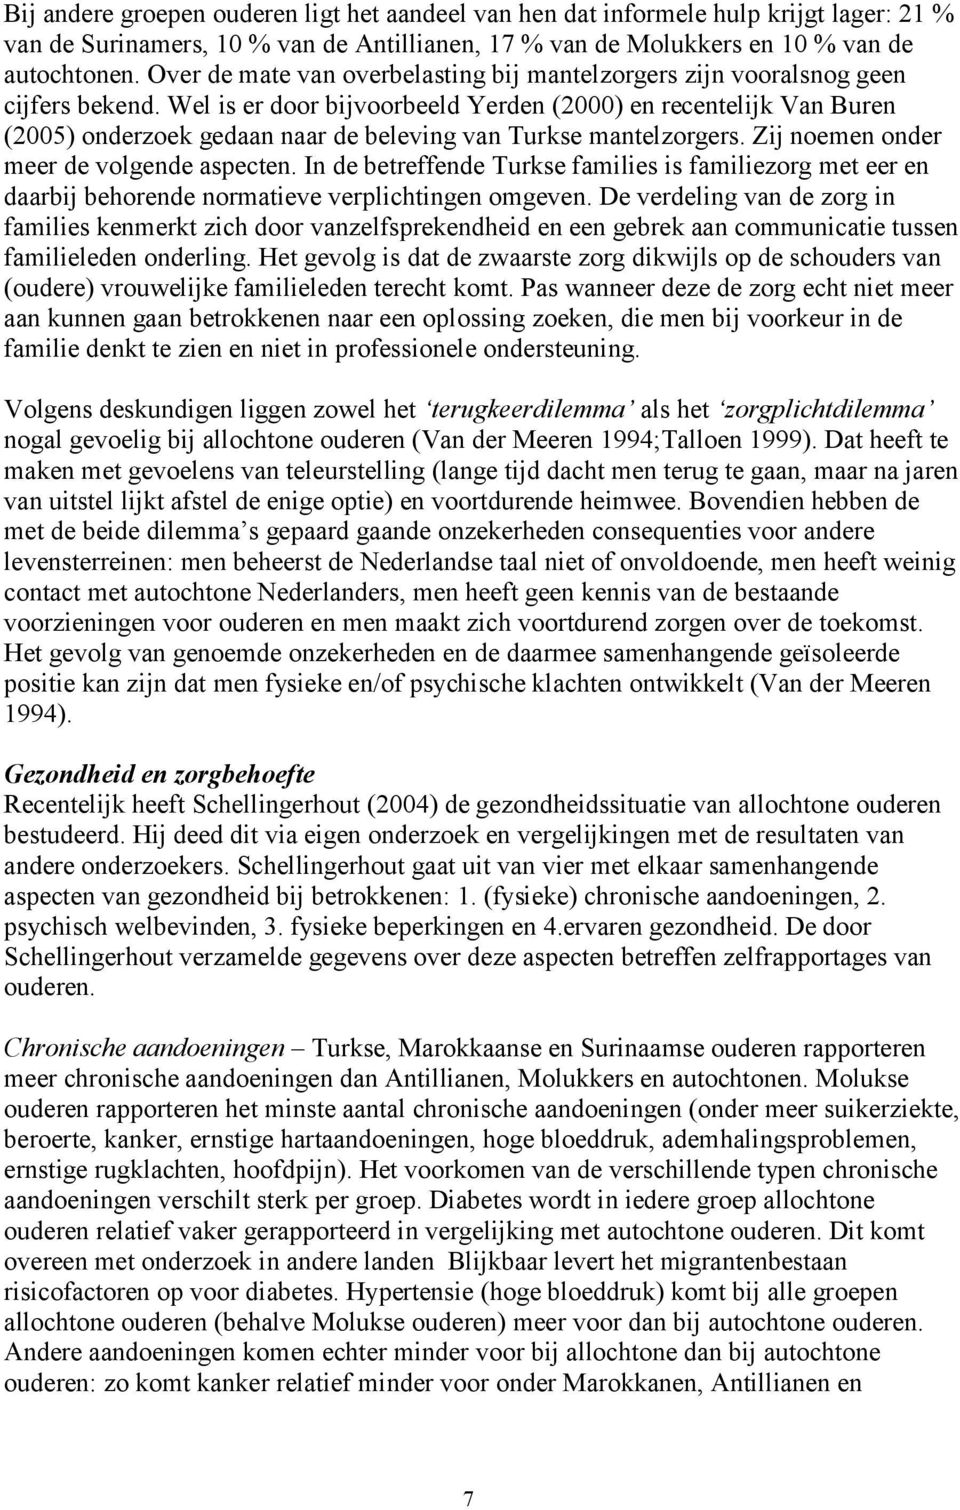 Wel is er door bijvoorbeeld Yerden (2000) en recentelijk Van Buren (2005) onderzoek gedaan naar de beleving van Turkse mantelzorgers. Zij noemen onder meer de volgende aspecten.